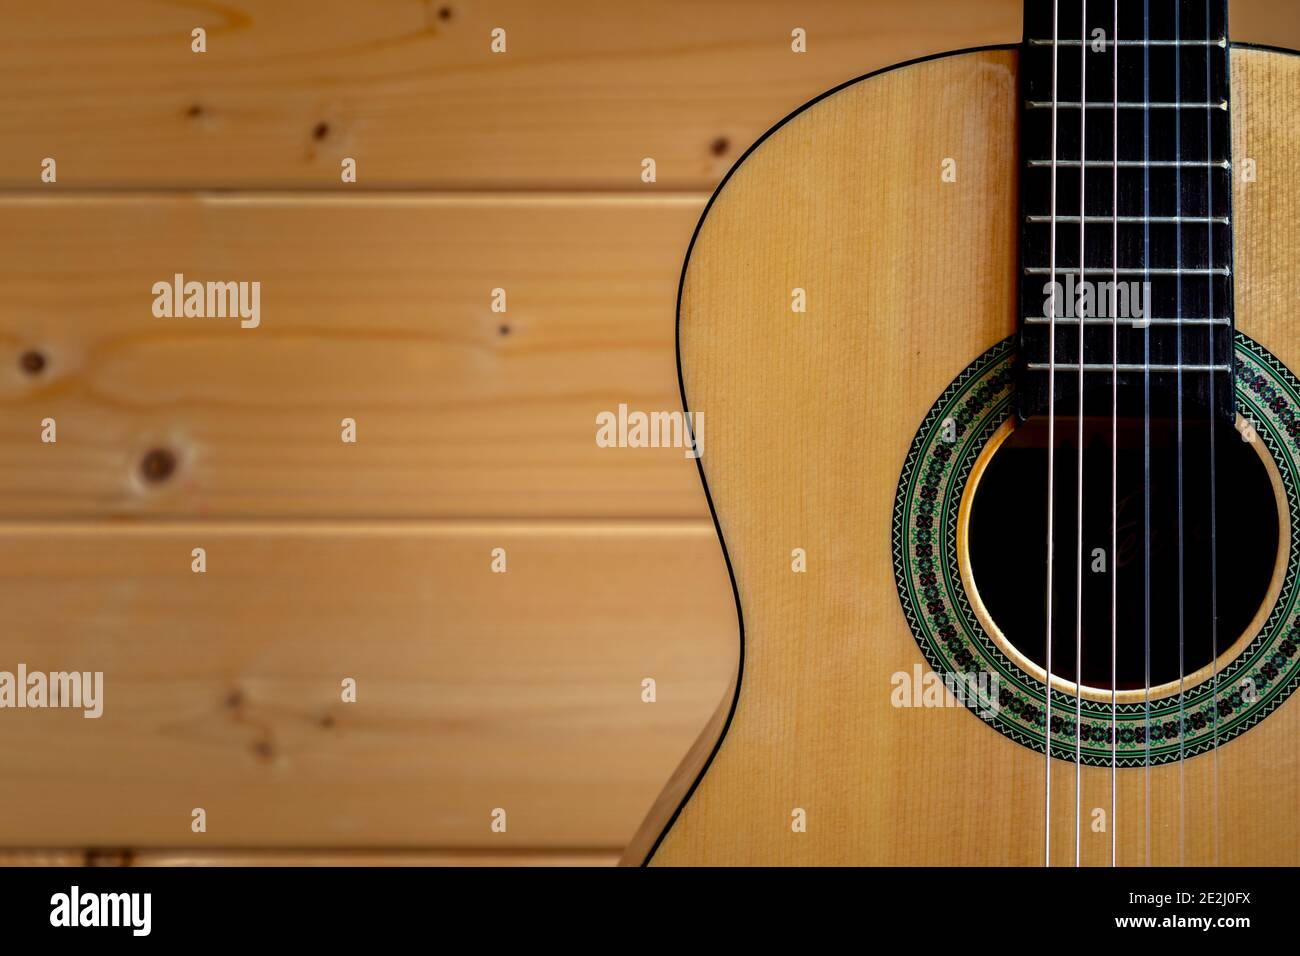 Vereinigtes Königreich. 13th. Januar 2021. Eine sechsaitige klassische (oder spanische) Gitarre, die an einer Kiefernwand befestigt ist. Fotograf: Brian Duffy Stockfoto